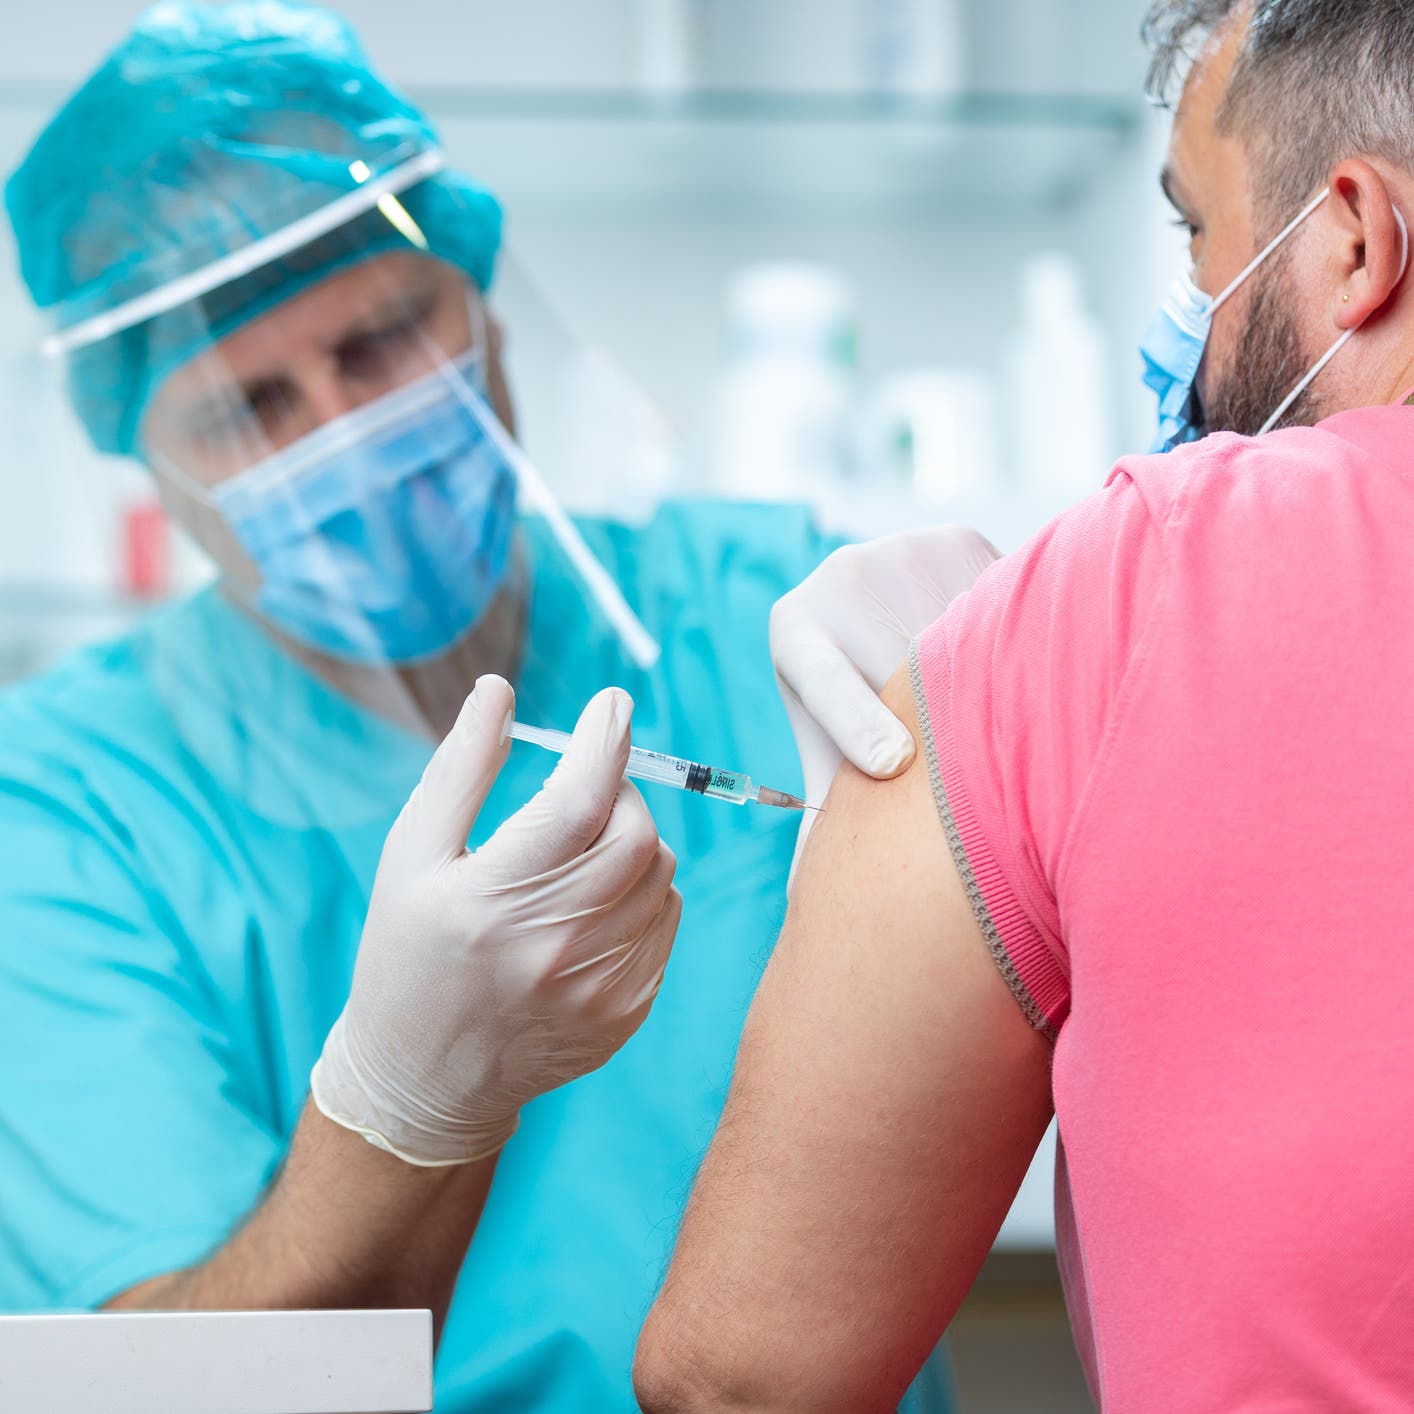 شركة أميركية تلجأ لحيلة عبقرية لإجبار الموظفين على التطعيم